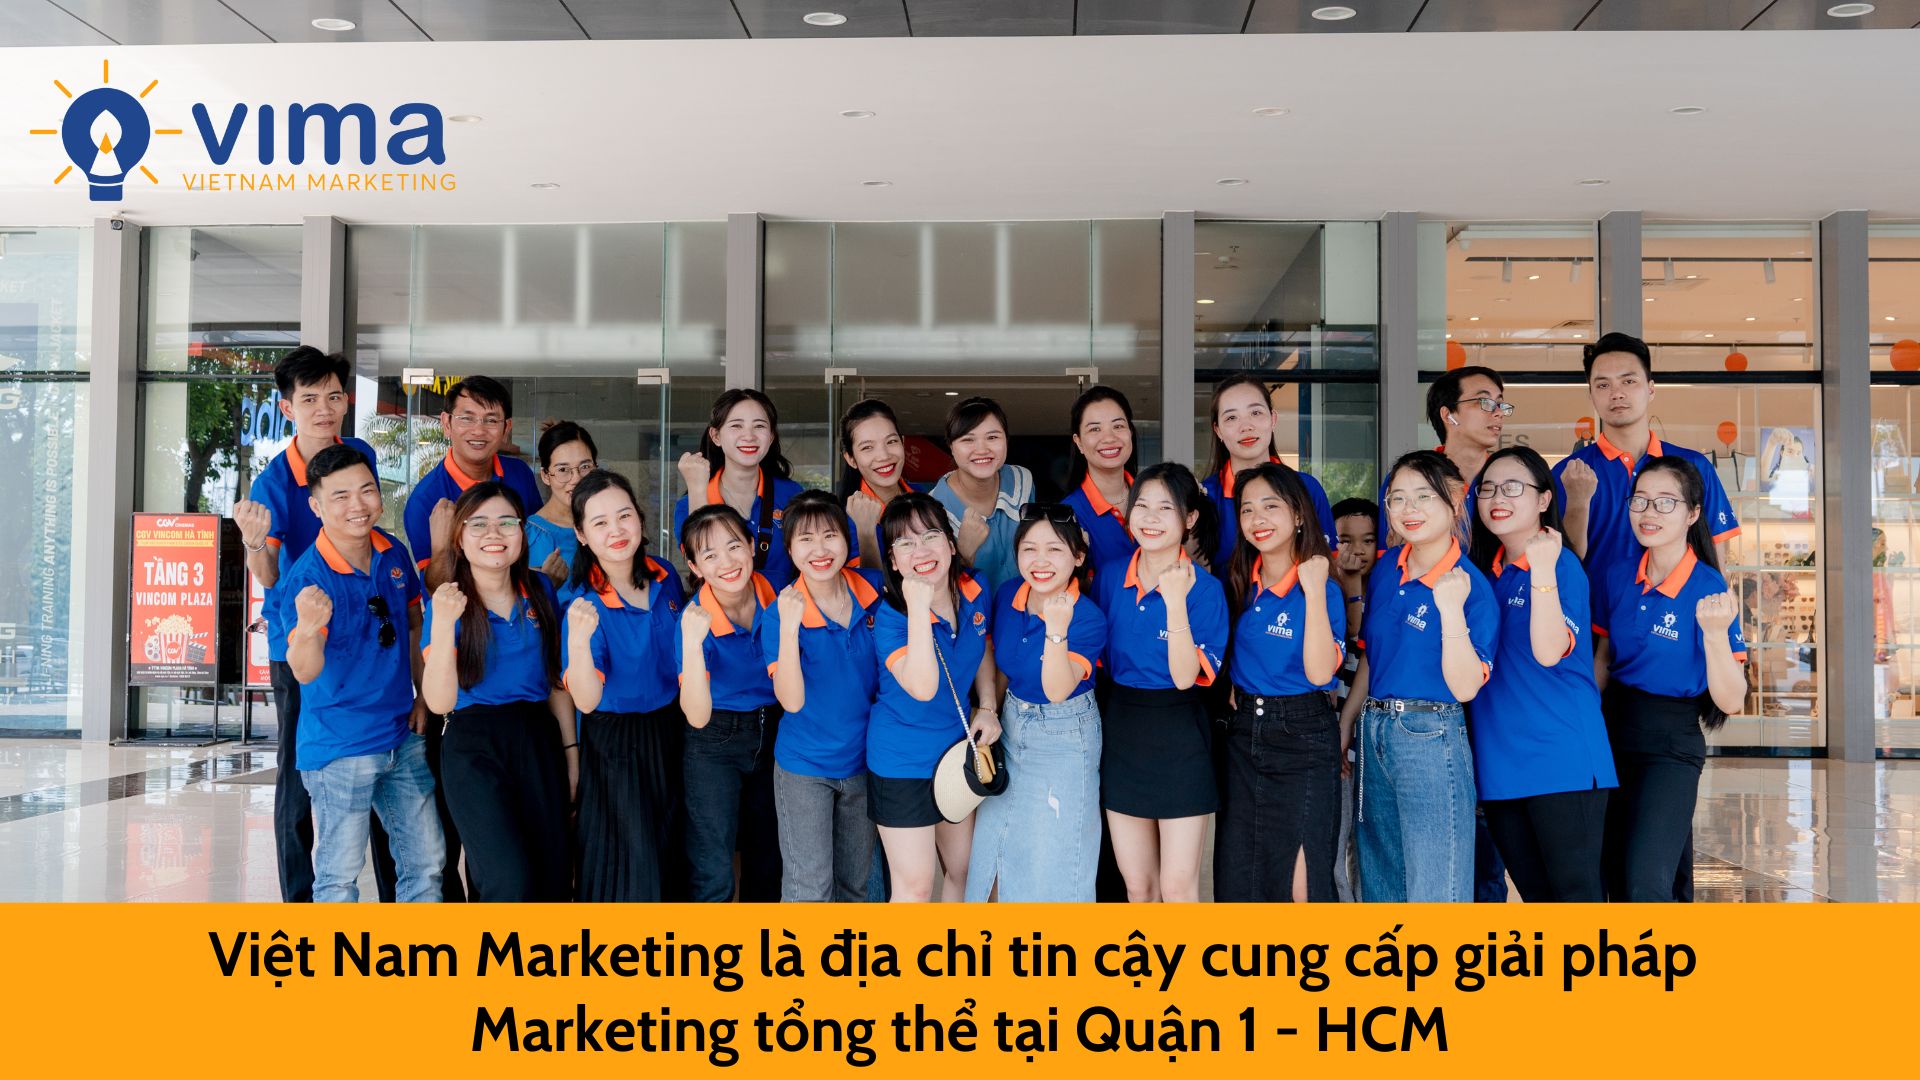 Việt Nam Marketing - đơn vị uy tín cung cấp giải pháp Marketing tổng thể